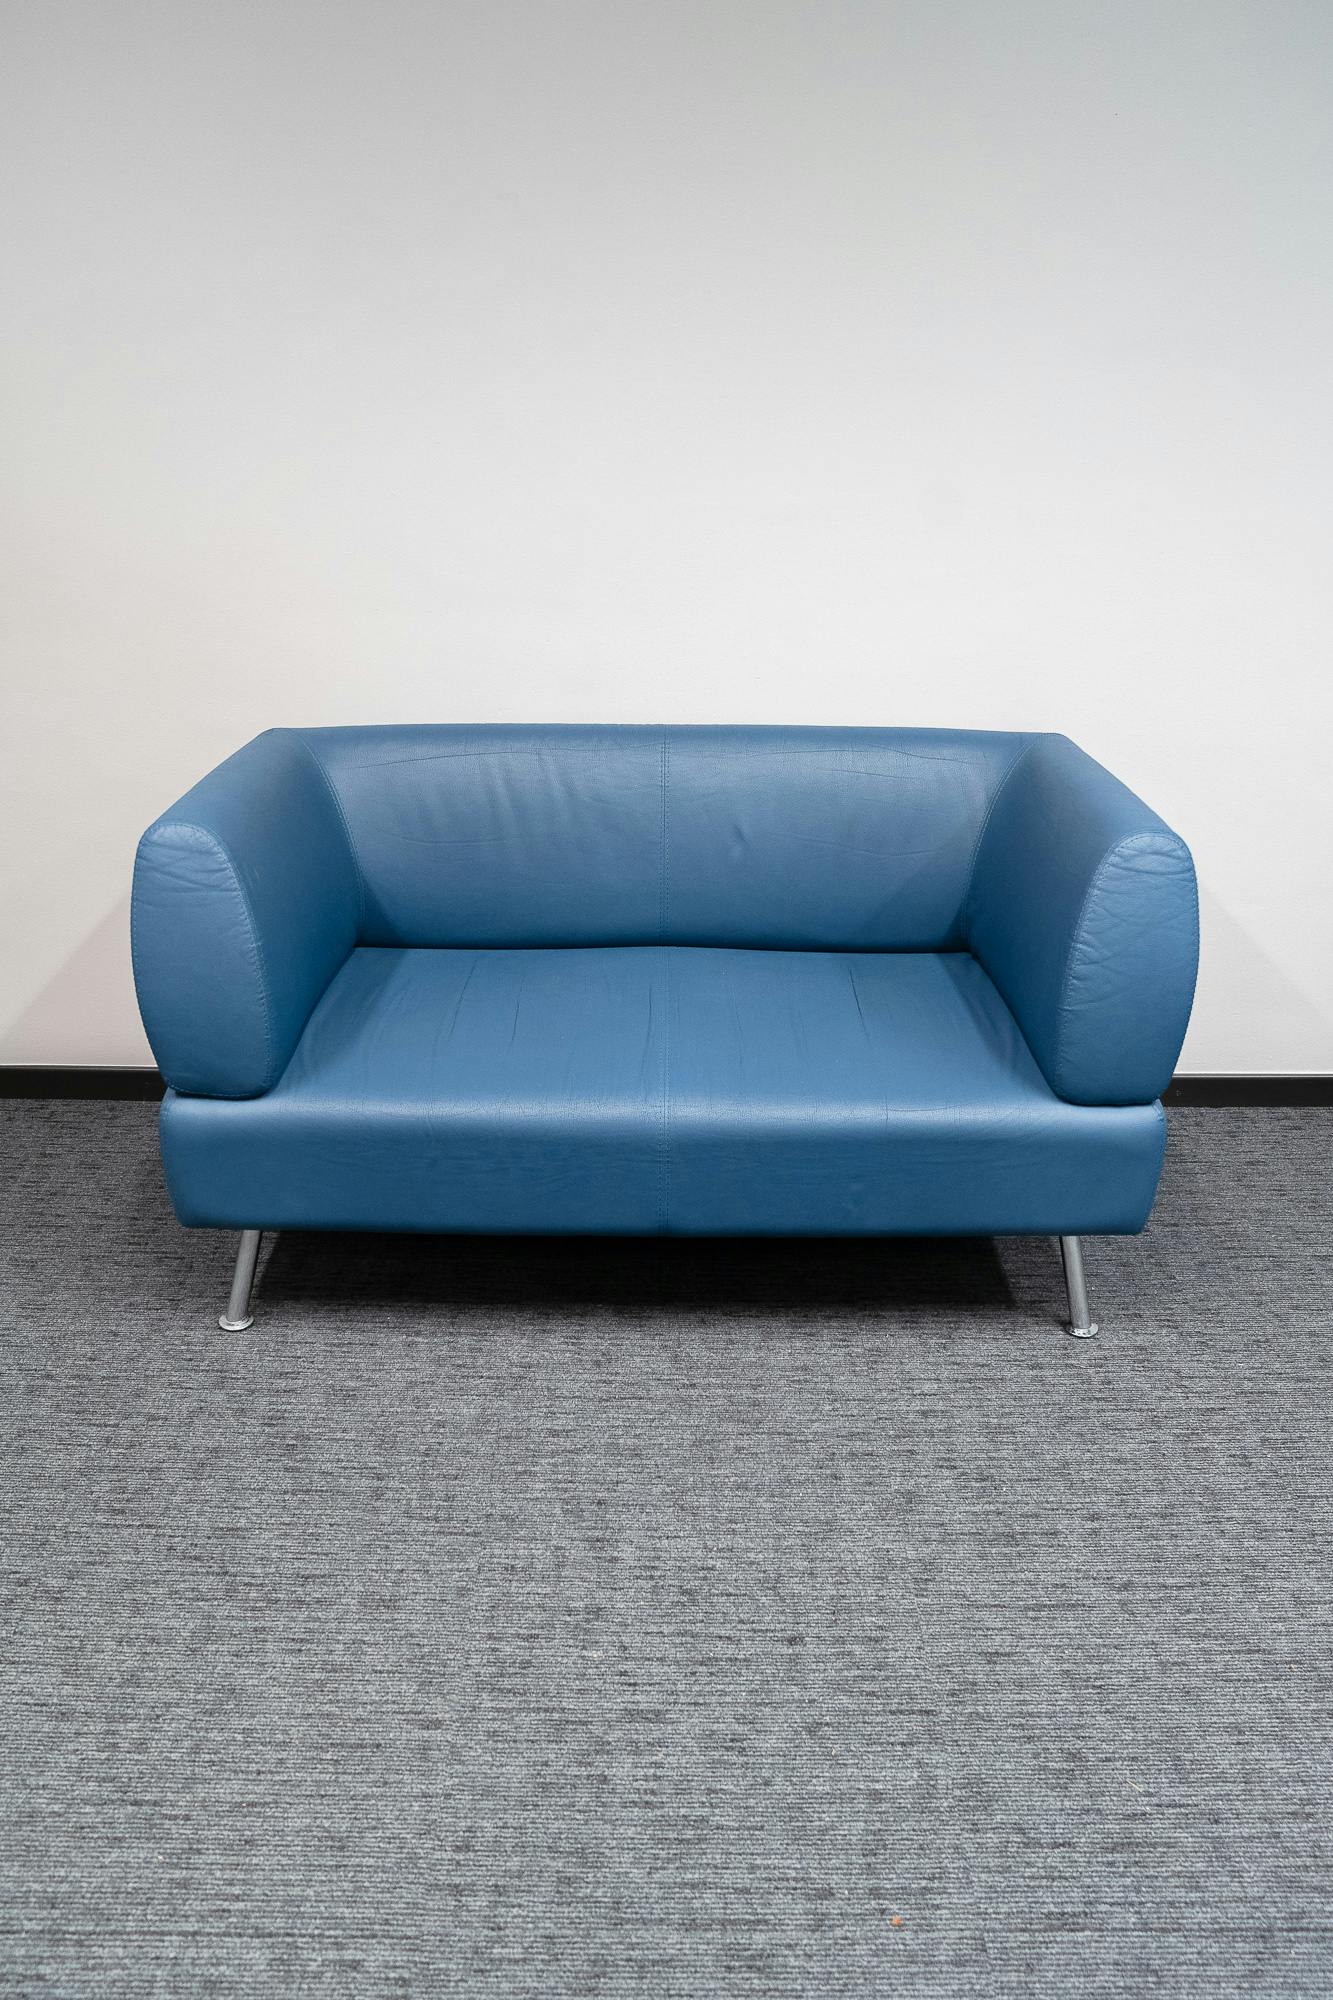 Vintage blauw-grijze leren bank - Tweedehands kwaliteit "Leunstoelen en luiers" - Relieve Furniture